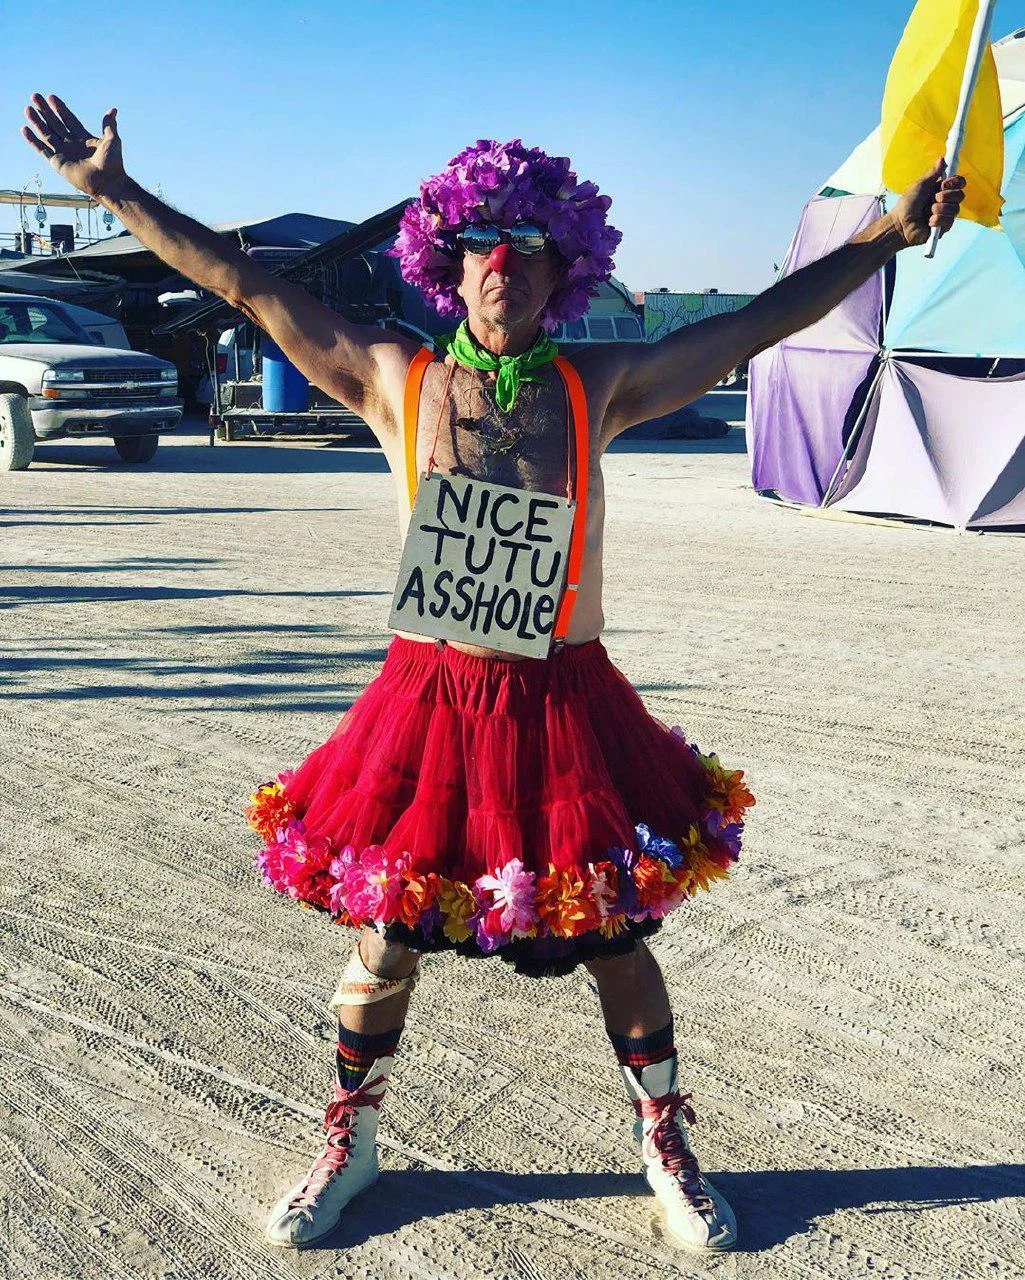 Как прошел Burning Man 2019 в фотографиях - фото 13